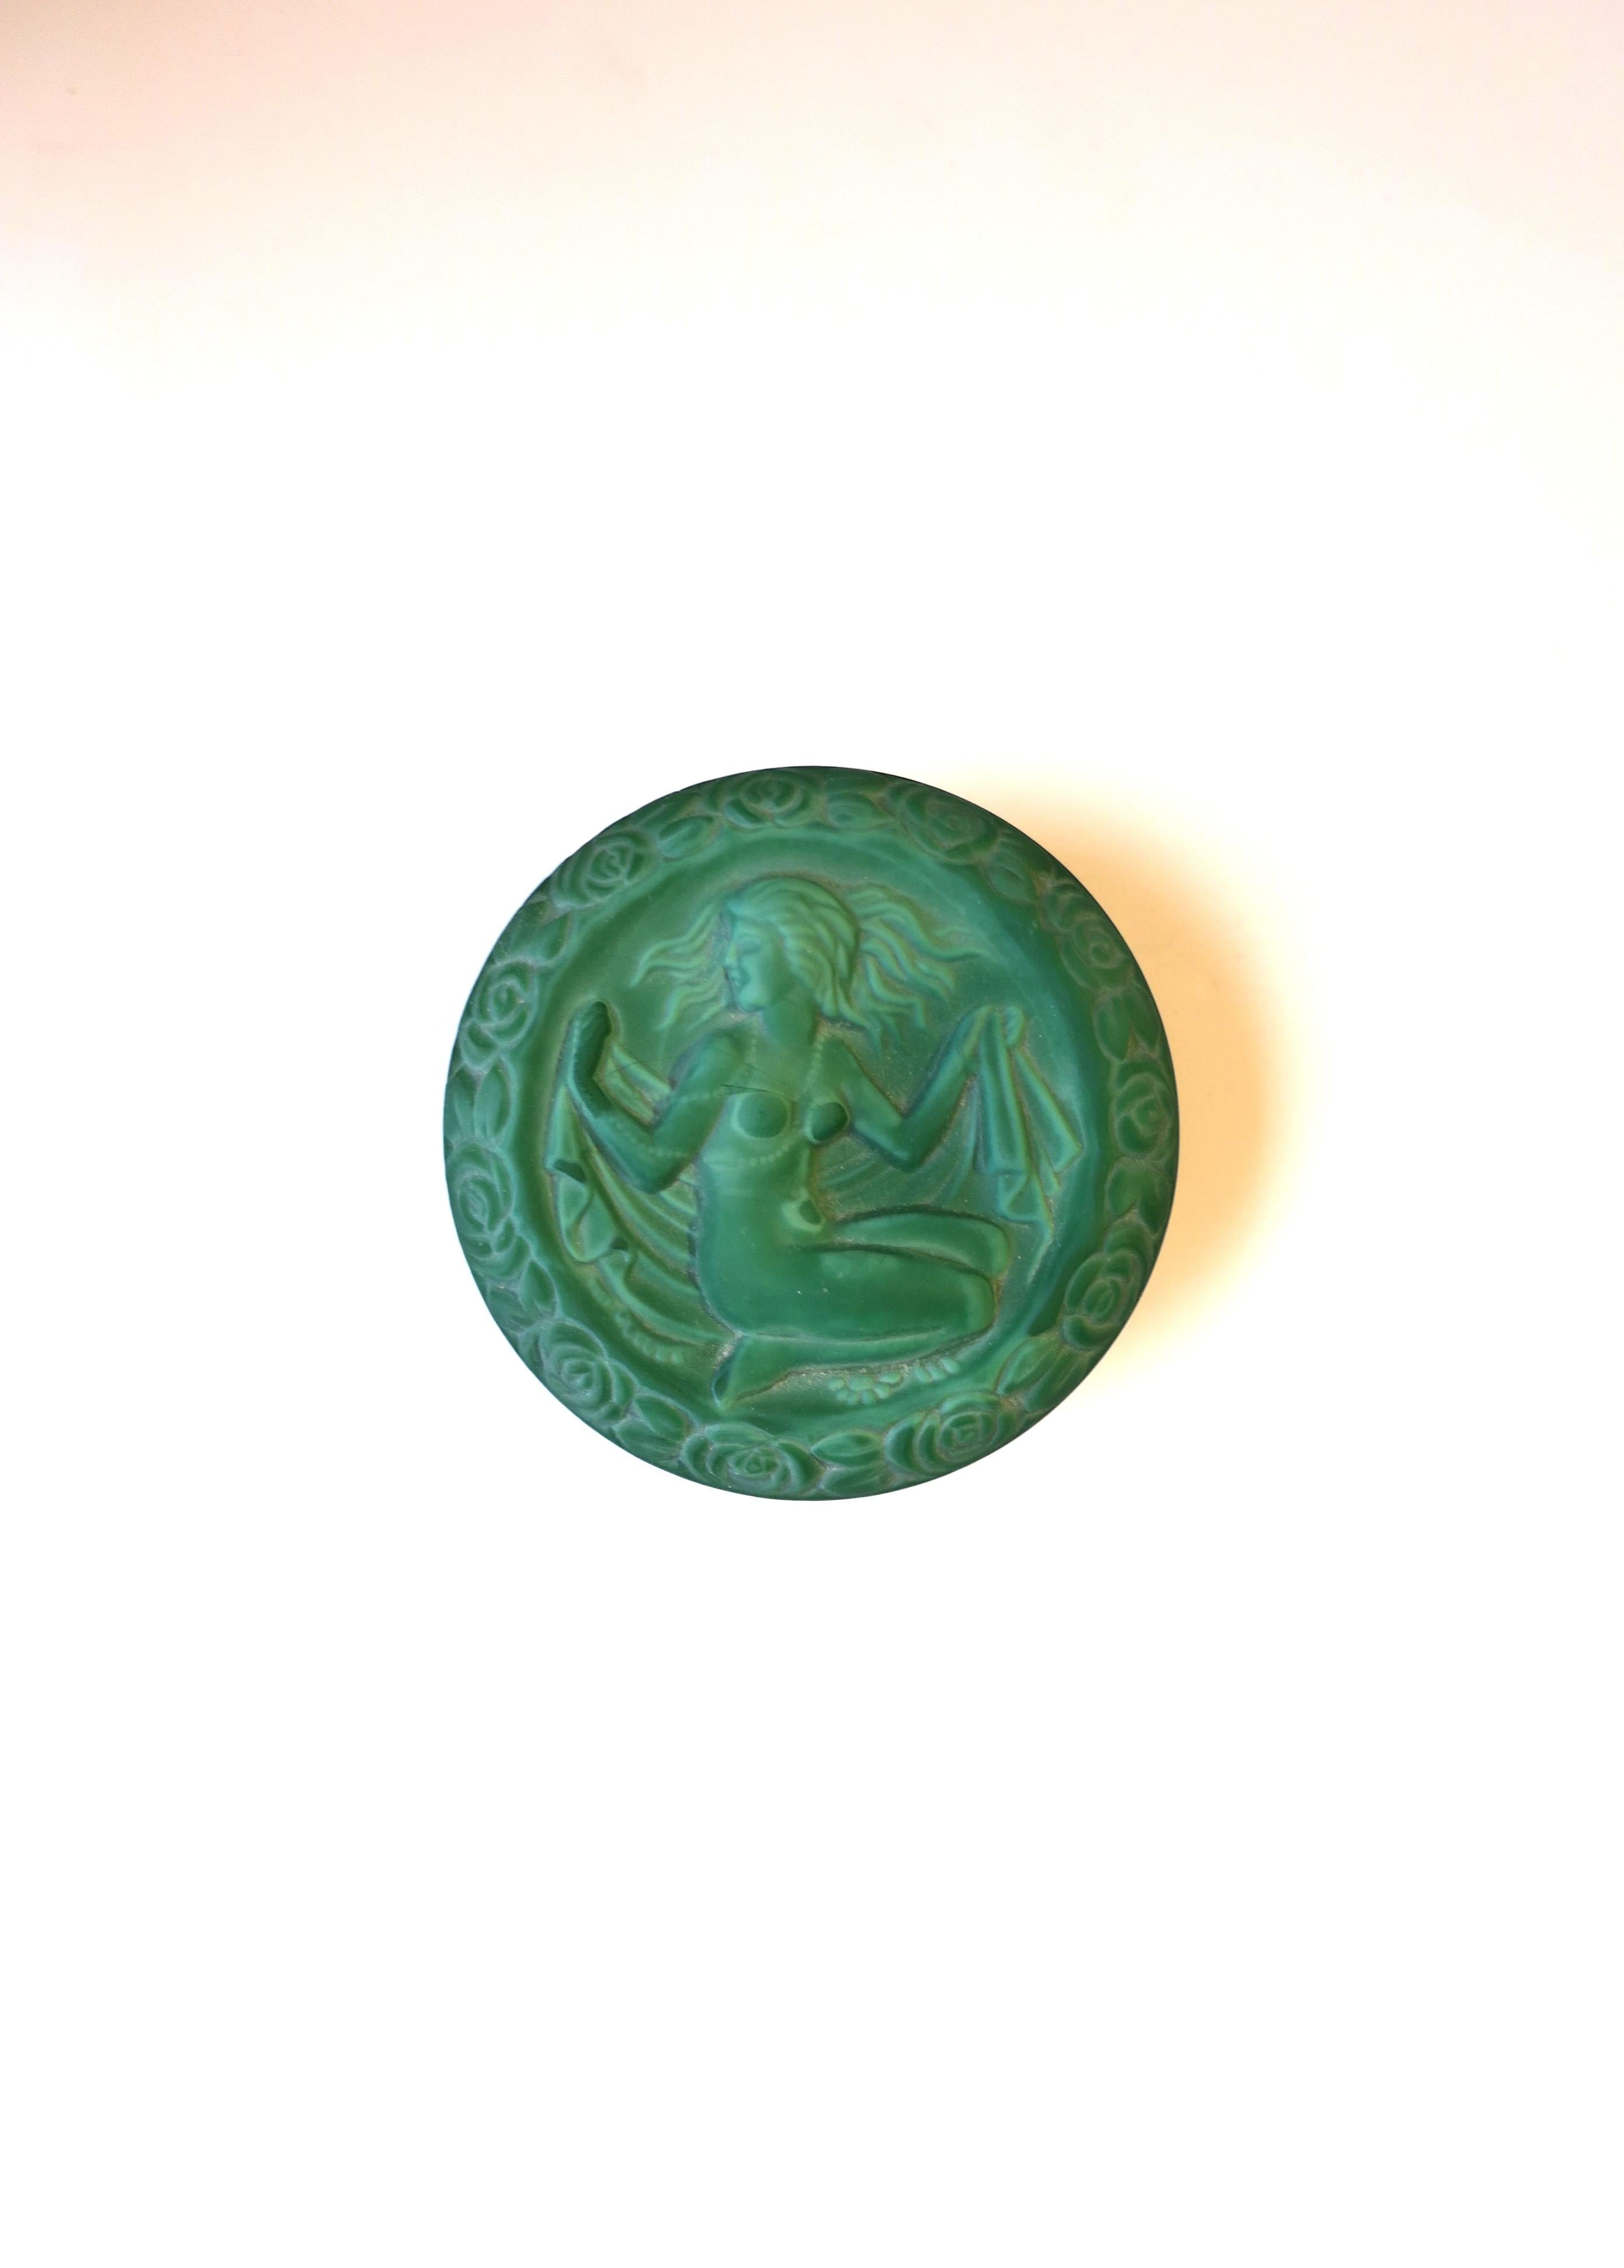 Schöne handgefertigte Dose aus grünem Malachitglas mit Frauenrelief im Art-Déco-Stil, ca. Ende des 20. Jahrhunderts, Tschechische Republik. Dies ist eine runde Dose mit einem Hochrelief eines weiblichen Aktes, umgeben von Blumen (um den Rand herum).